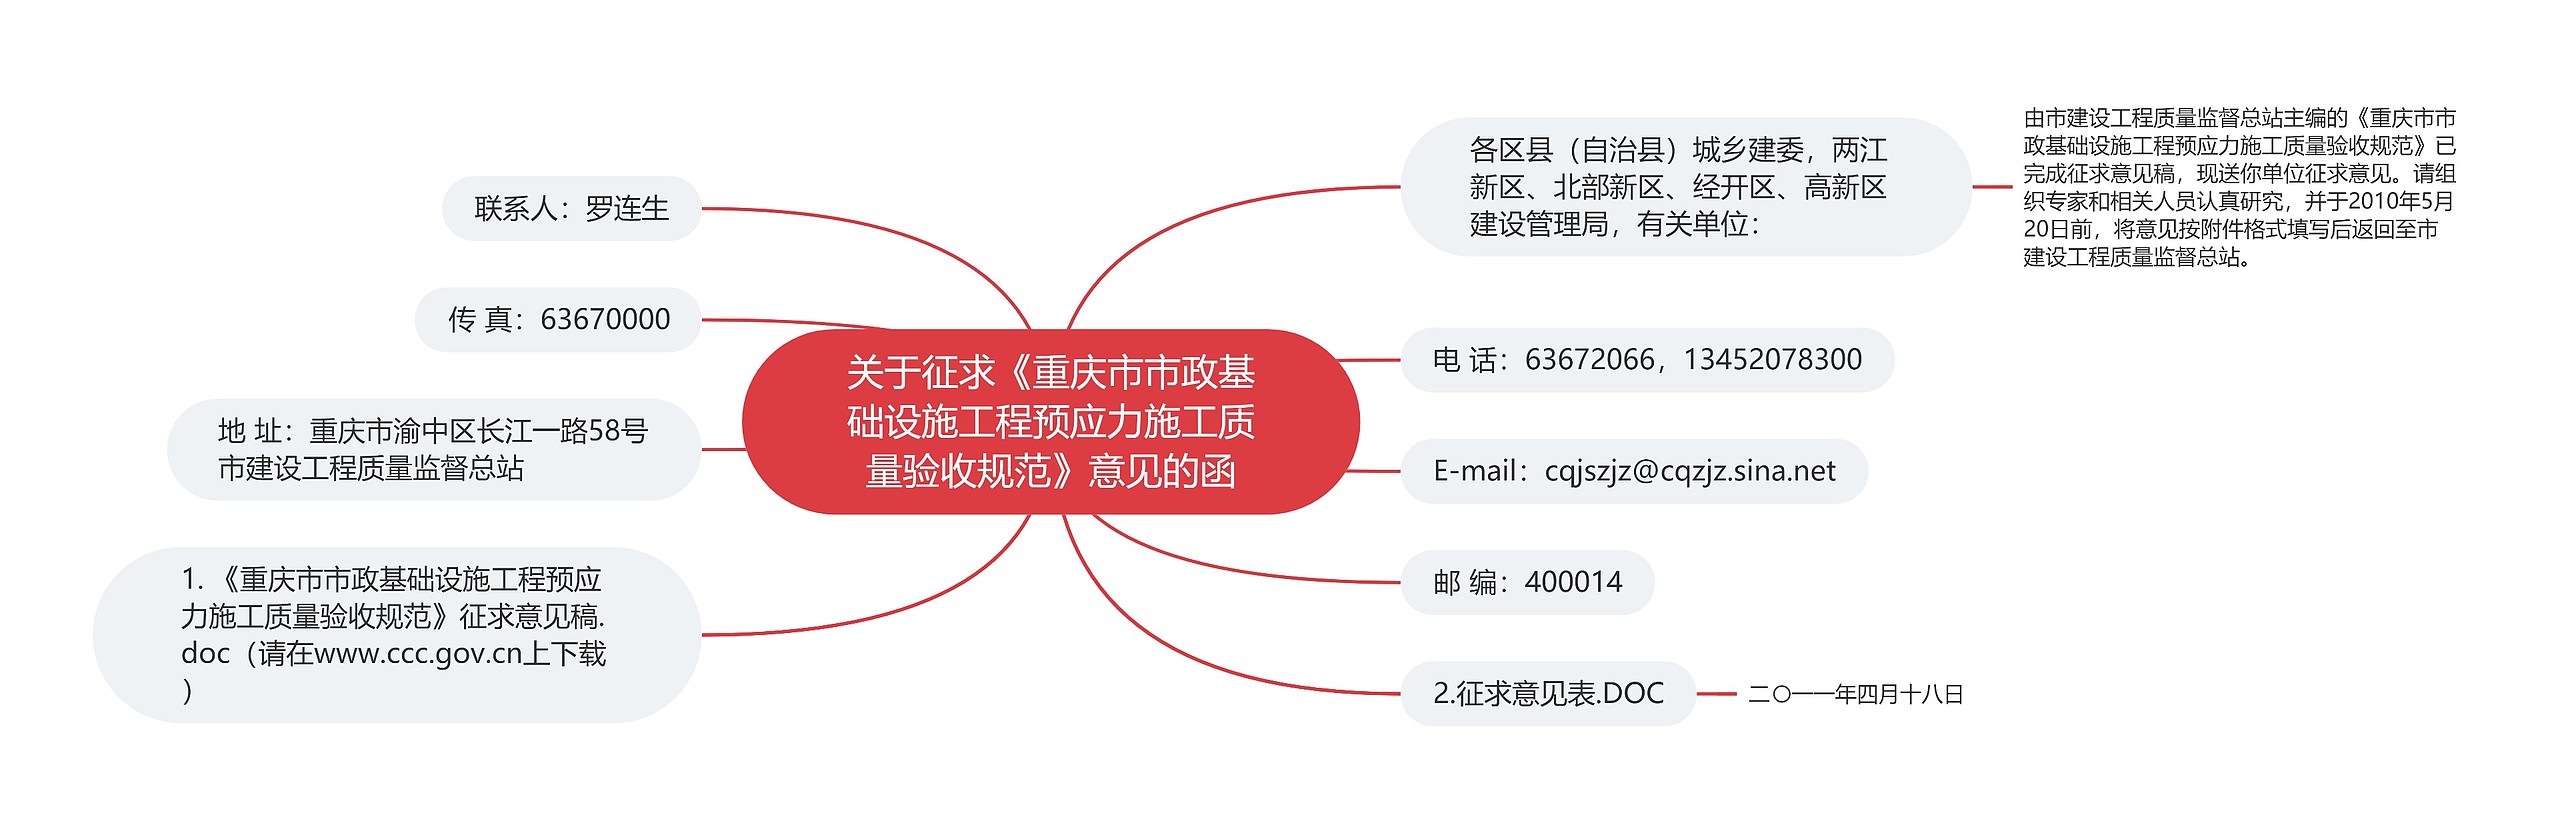 关于征求《重庆市市政基础设施工程预应力施工质量验收规范》意见的函思维导图